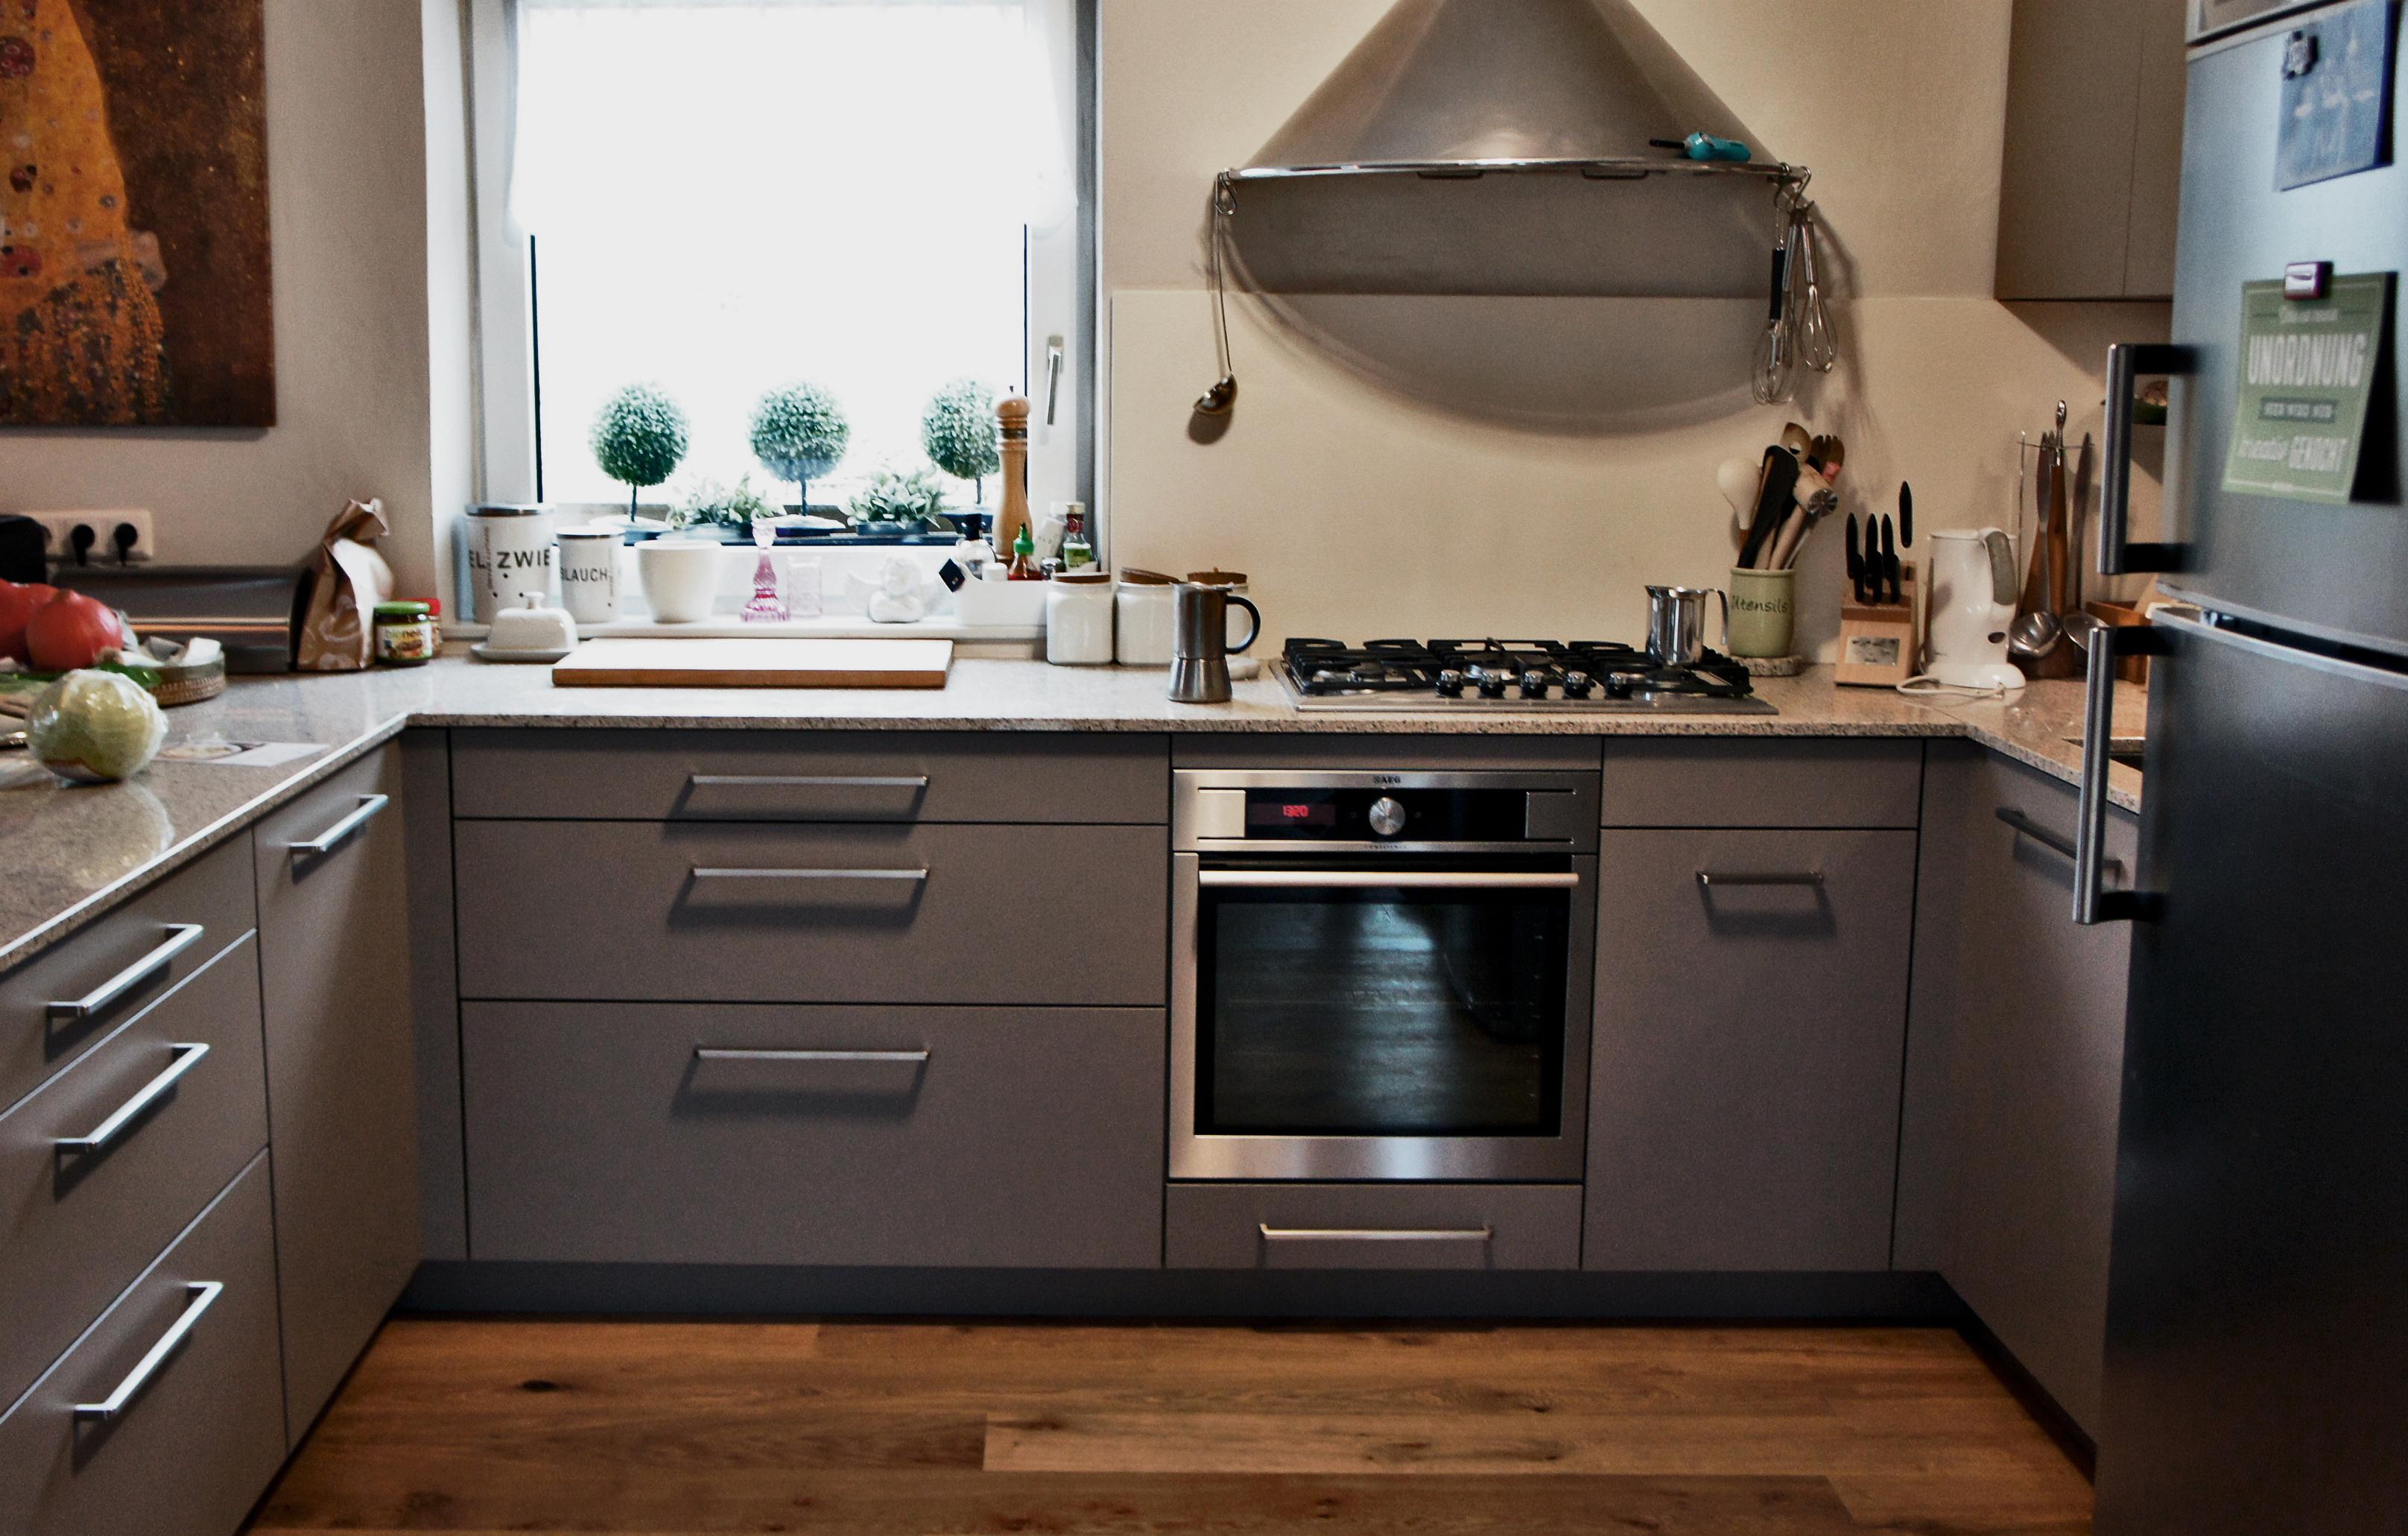 Küche | NEU #küche #offeneküche #renovierung ©inneWOHNEN